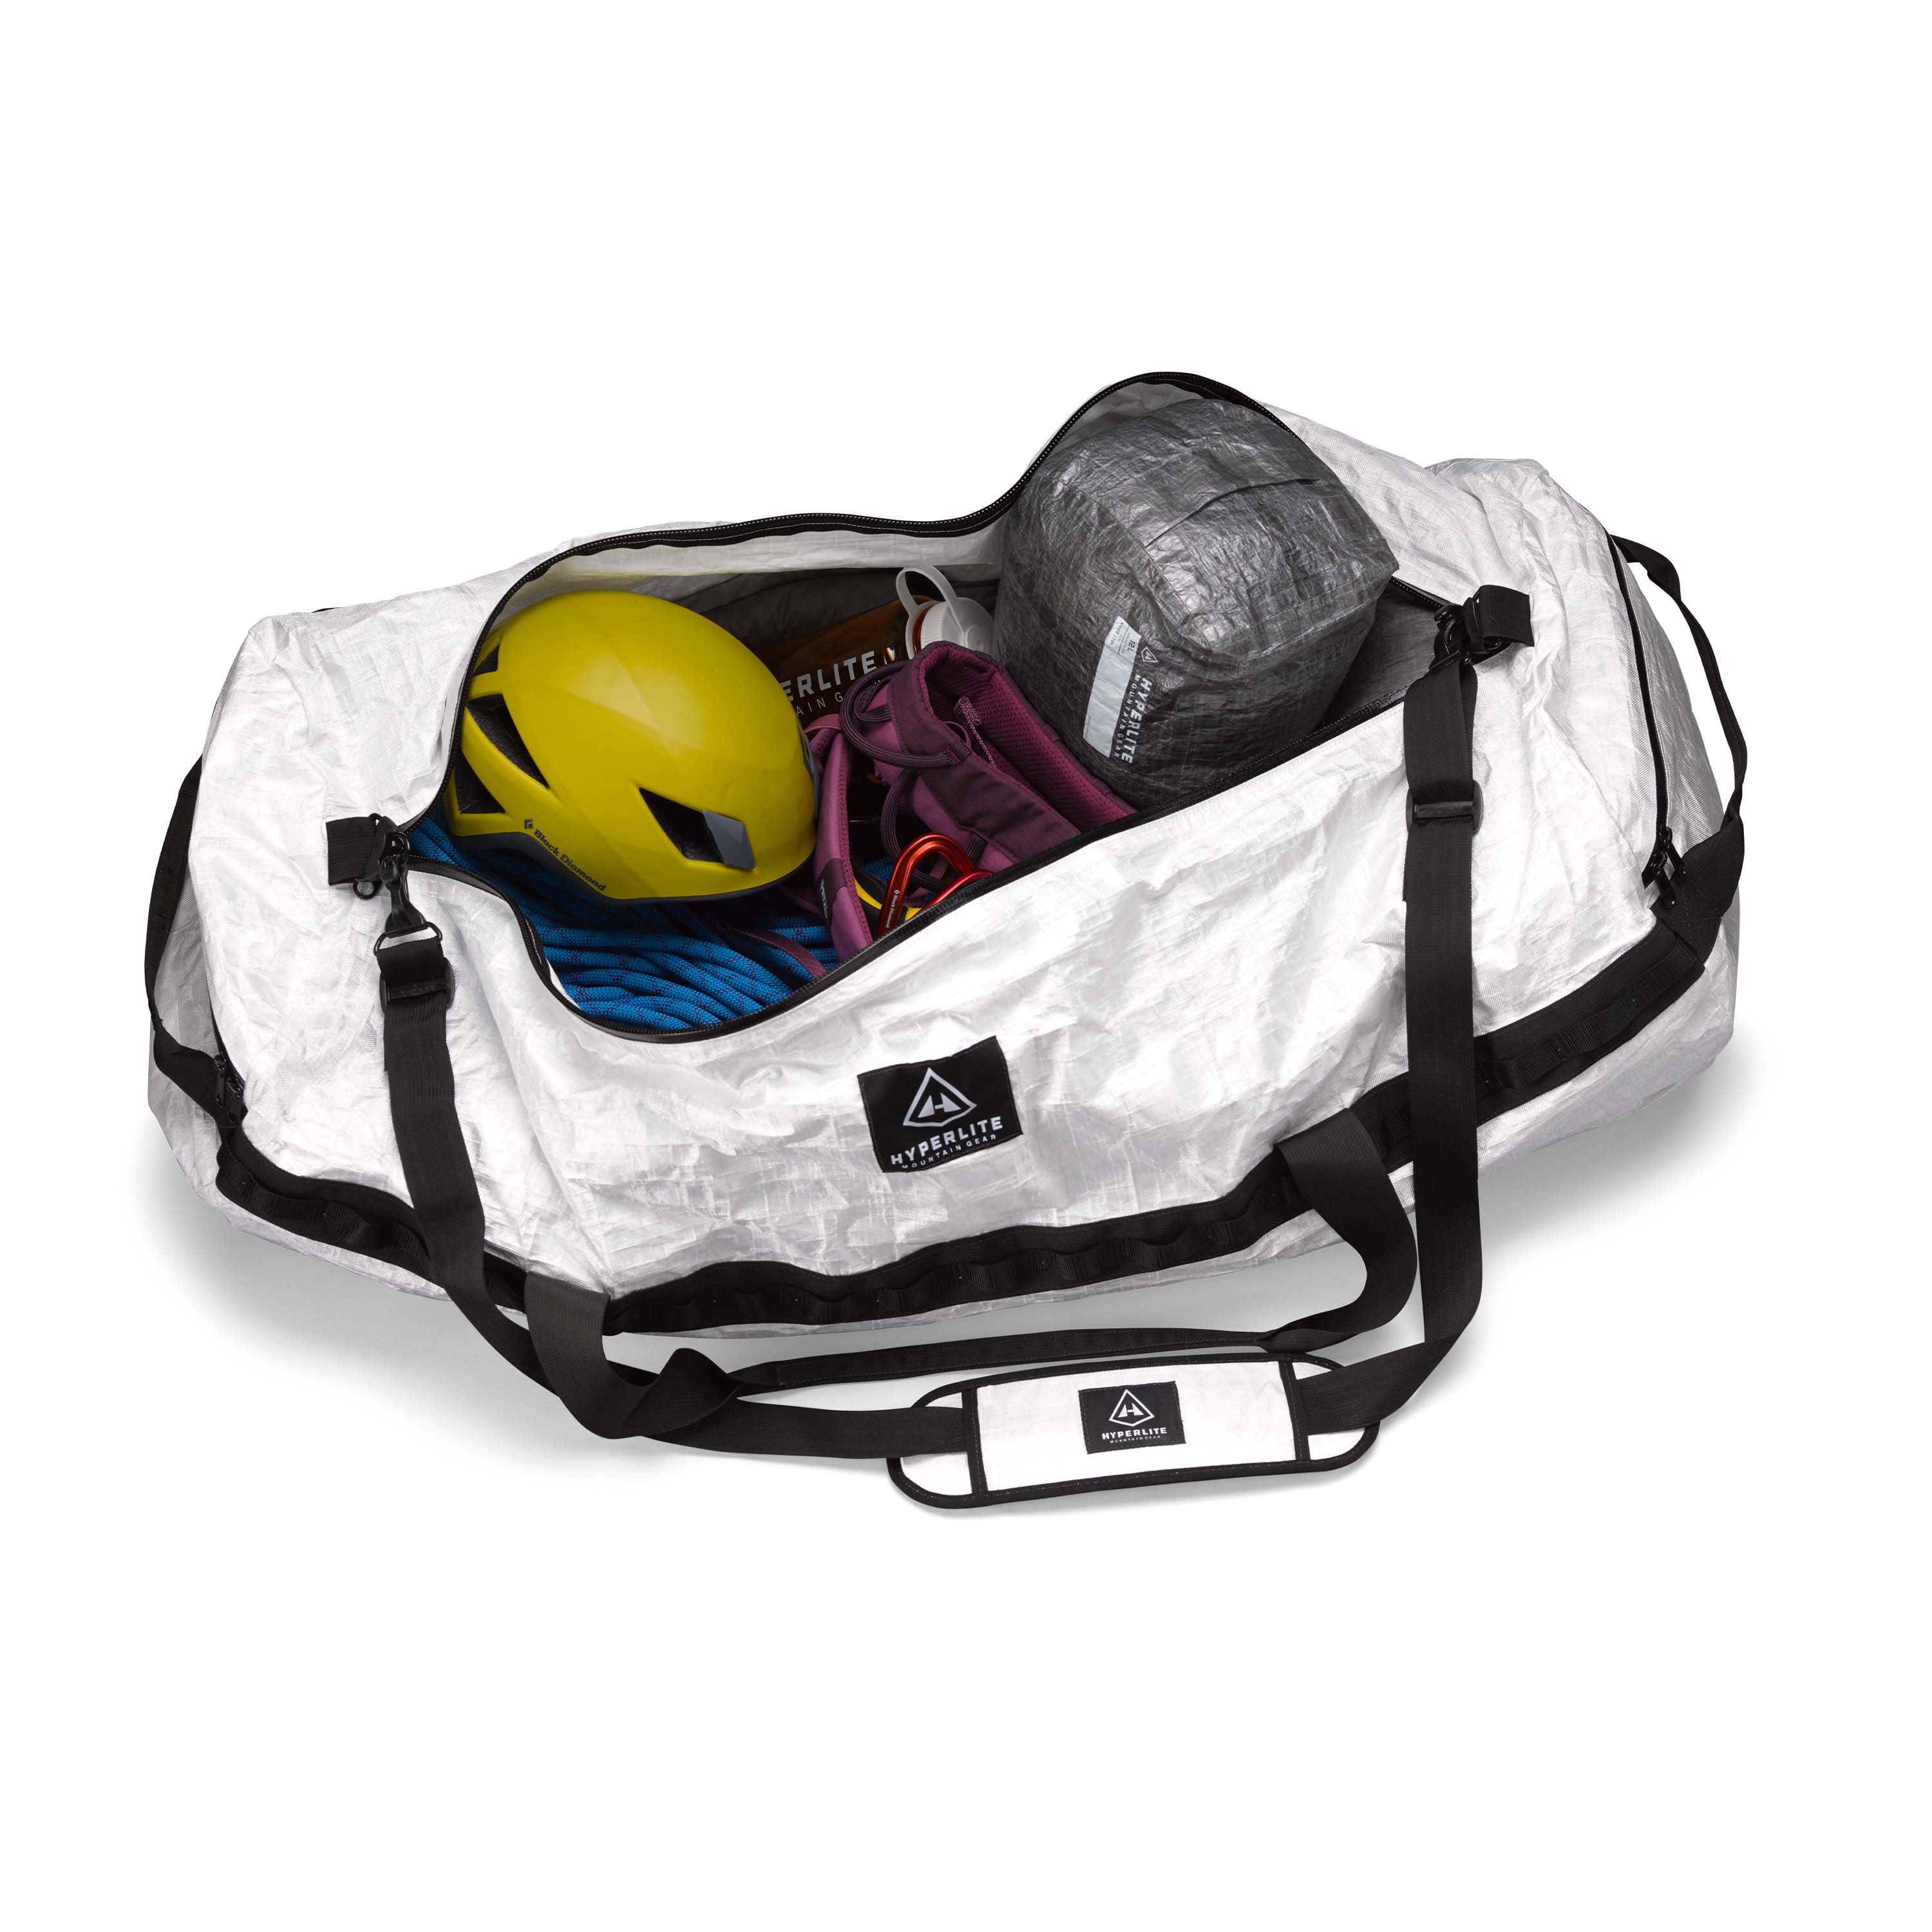 Hyperlite Mountain Gear Duffel Bag 140L Ultralight Expedition Gear